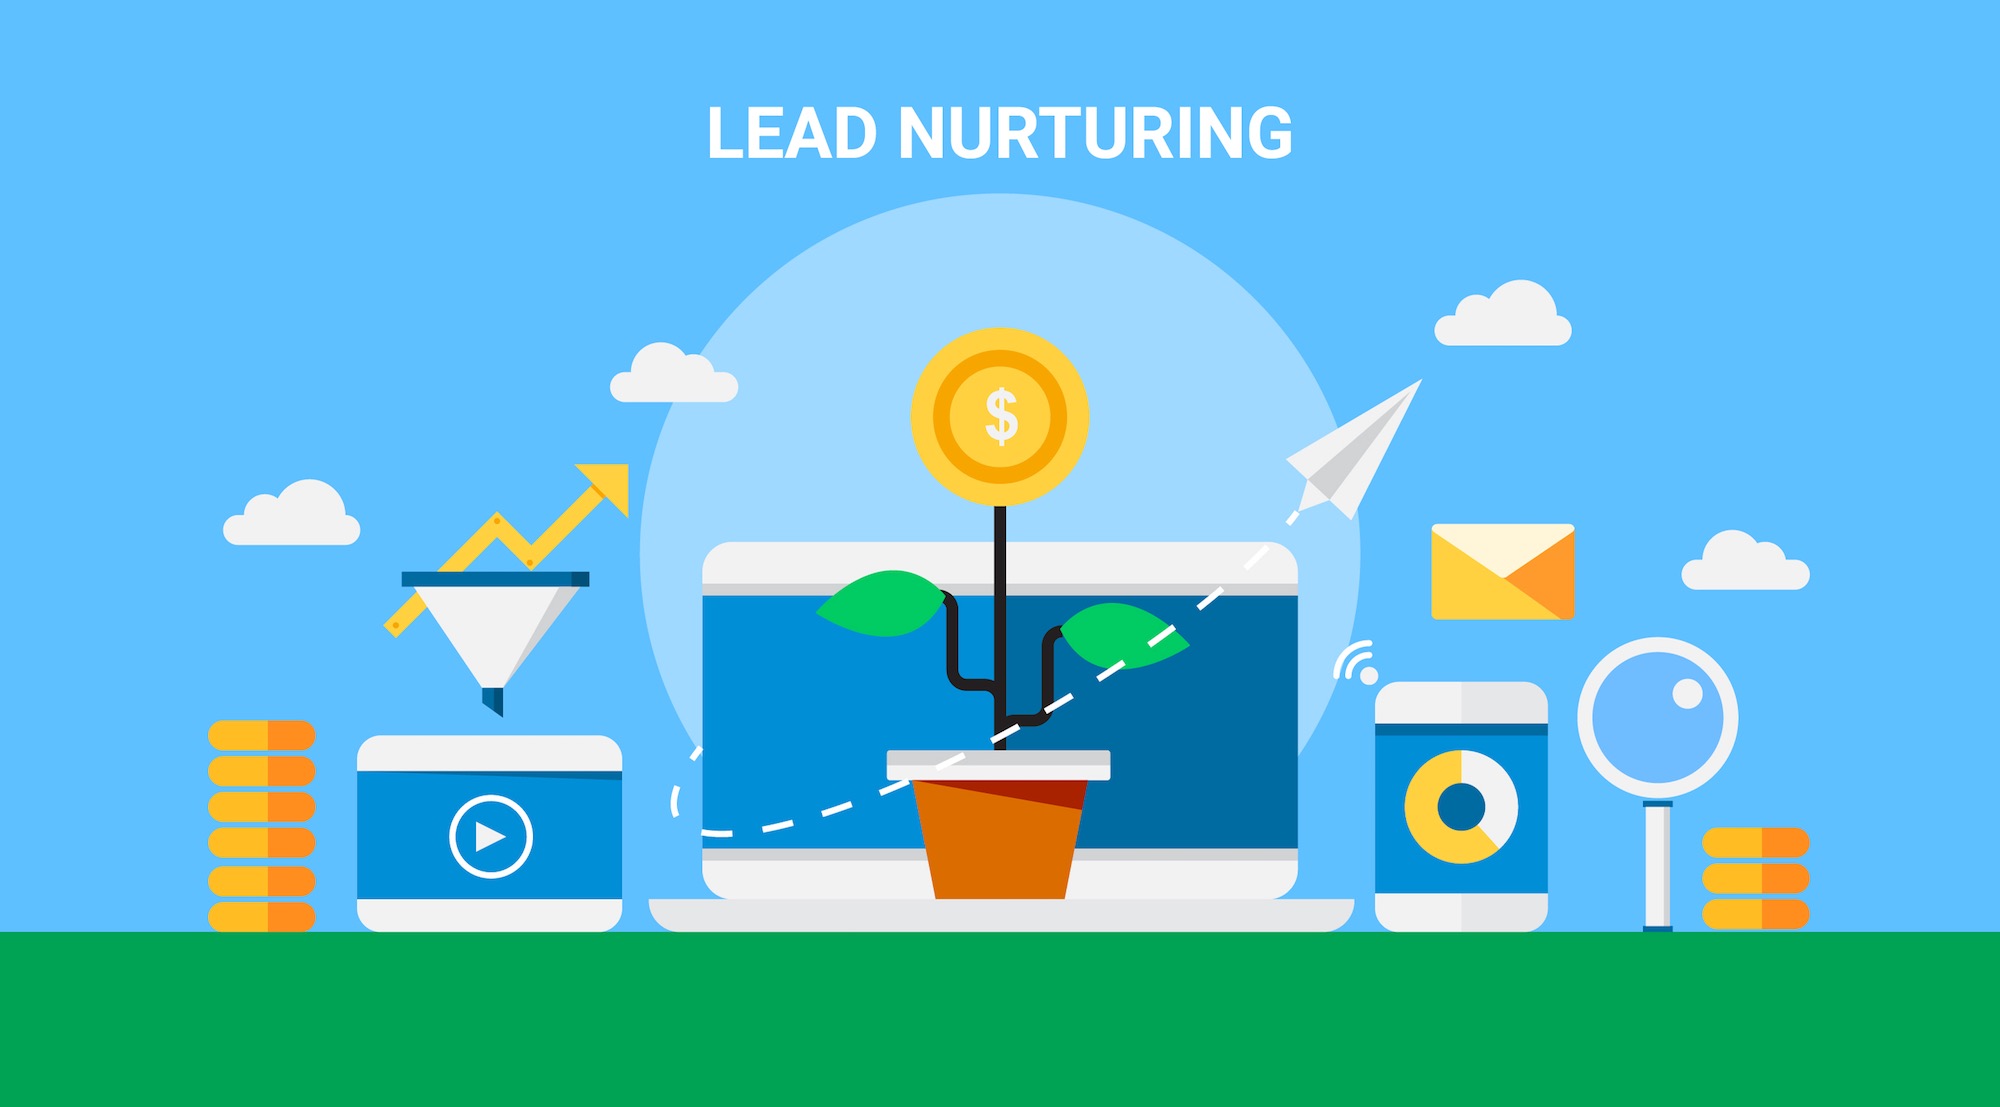 Illustrazione sul concetto dell'importanza del lead nurturing nel business